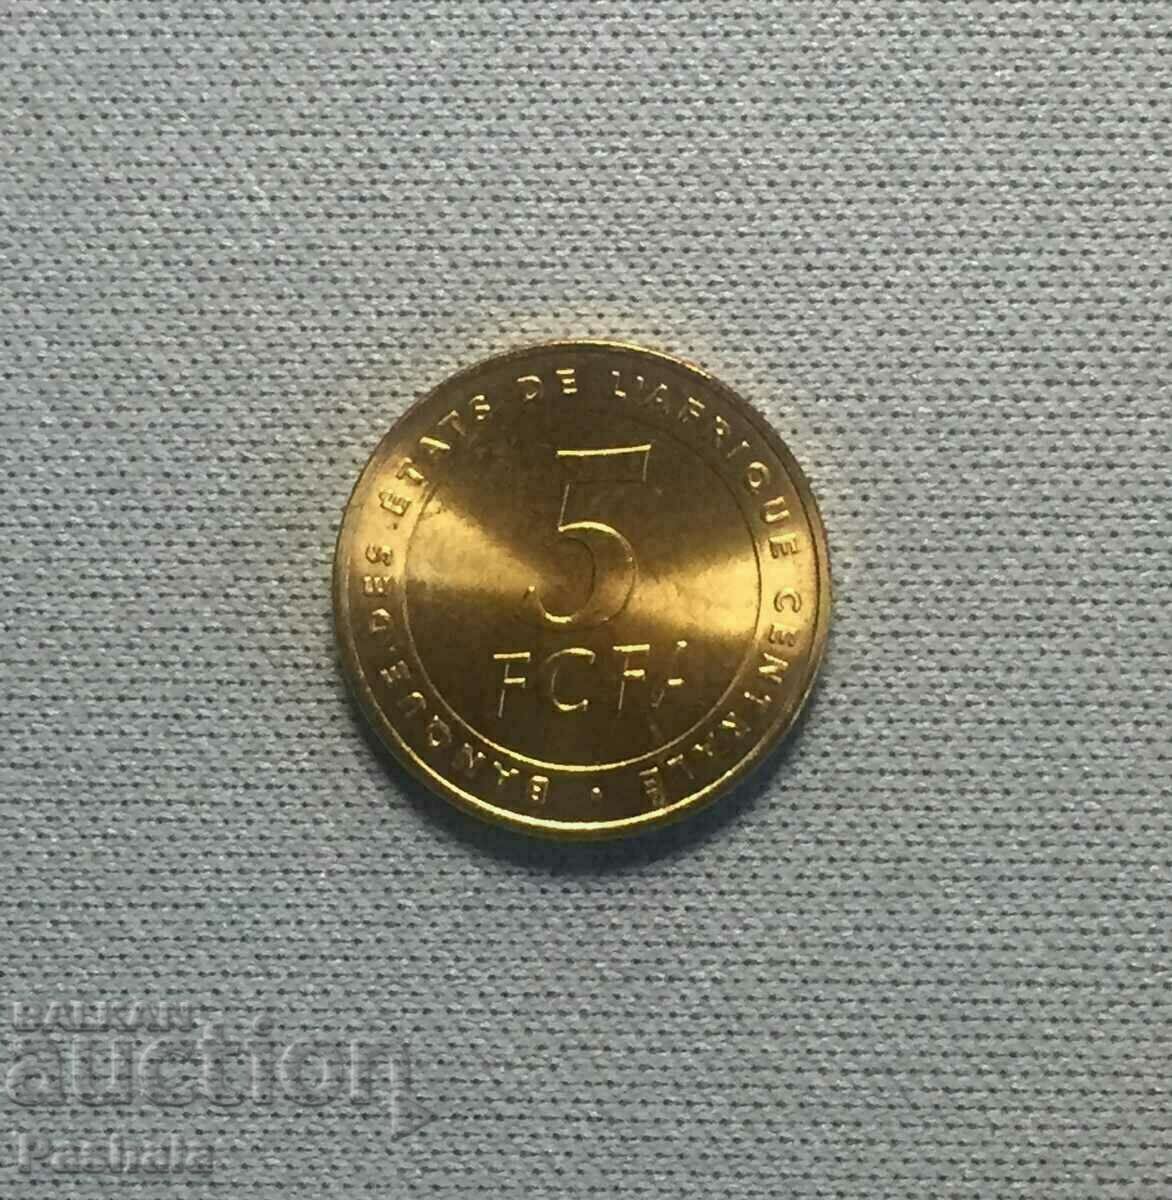 Central Africa 5 francs 2006